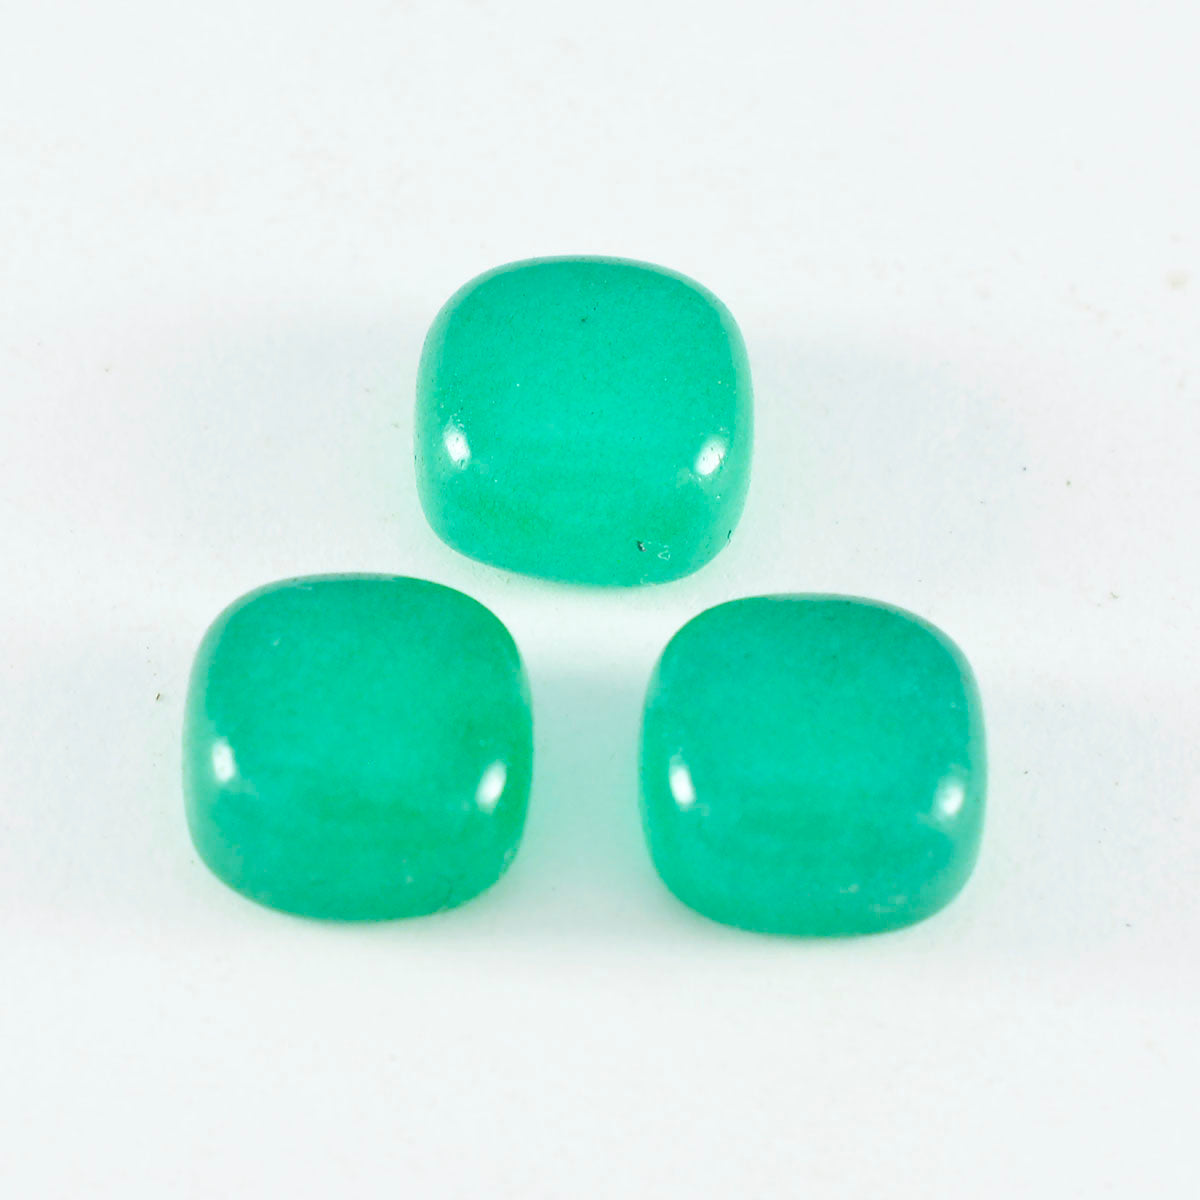 riyogems 1pc グリーン オニキス カボション 7x7 mm クッション形状 aaa 品質ルース宝石